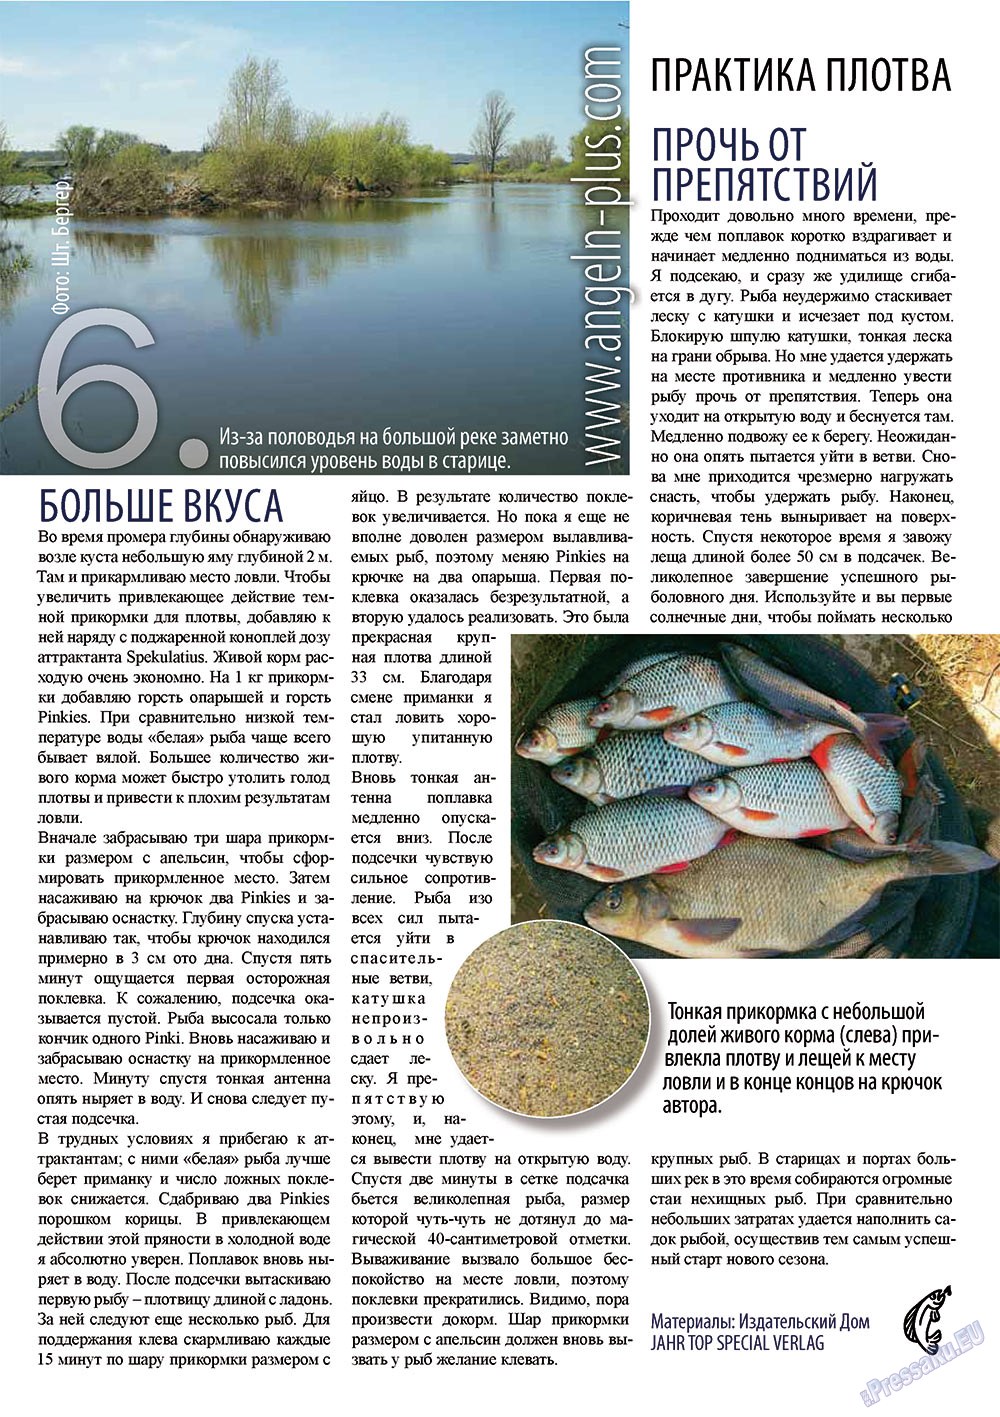 Рыбалка Plus, журнал. 2012 №2 стр.6